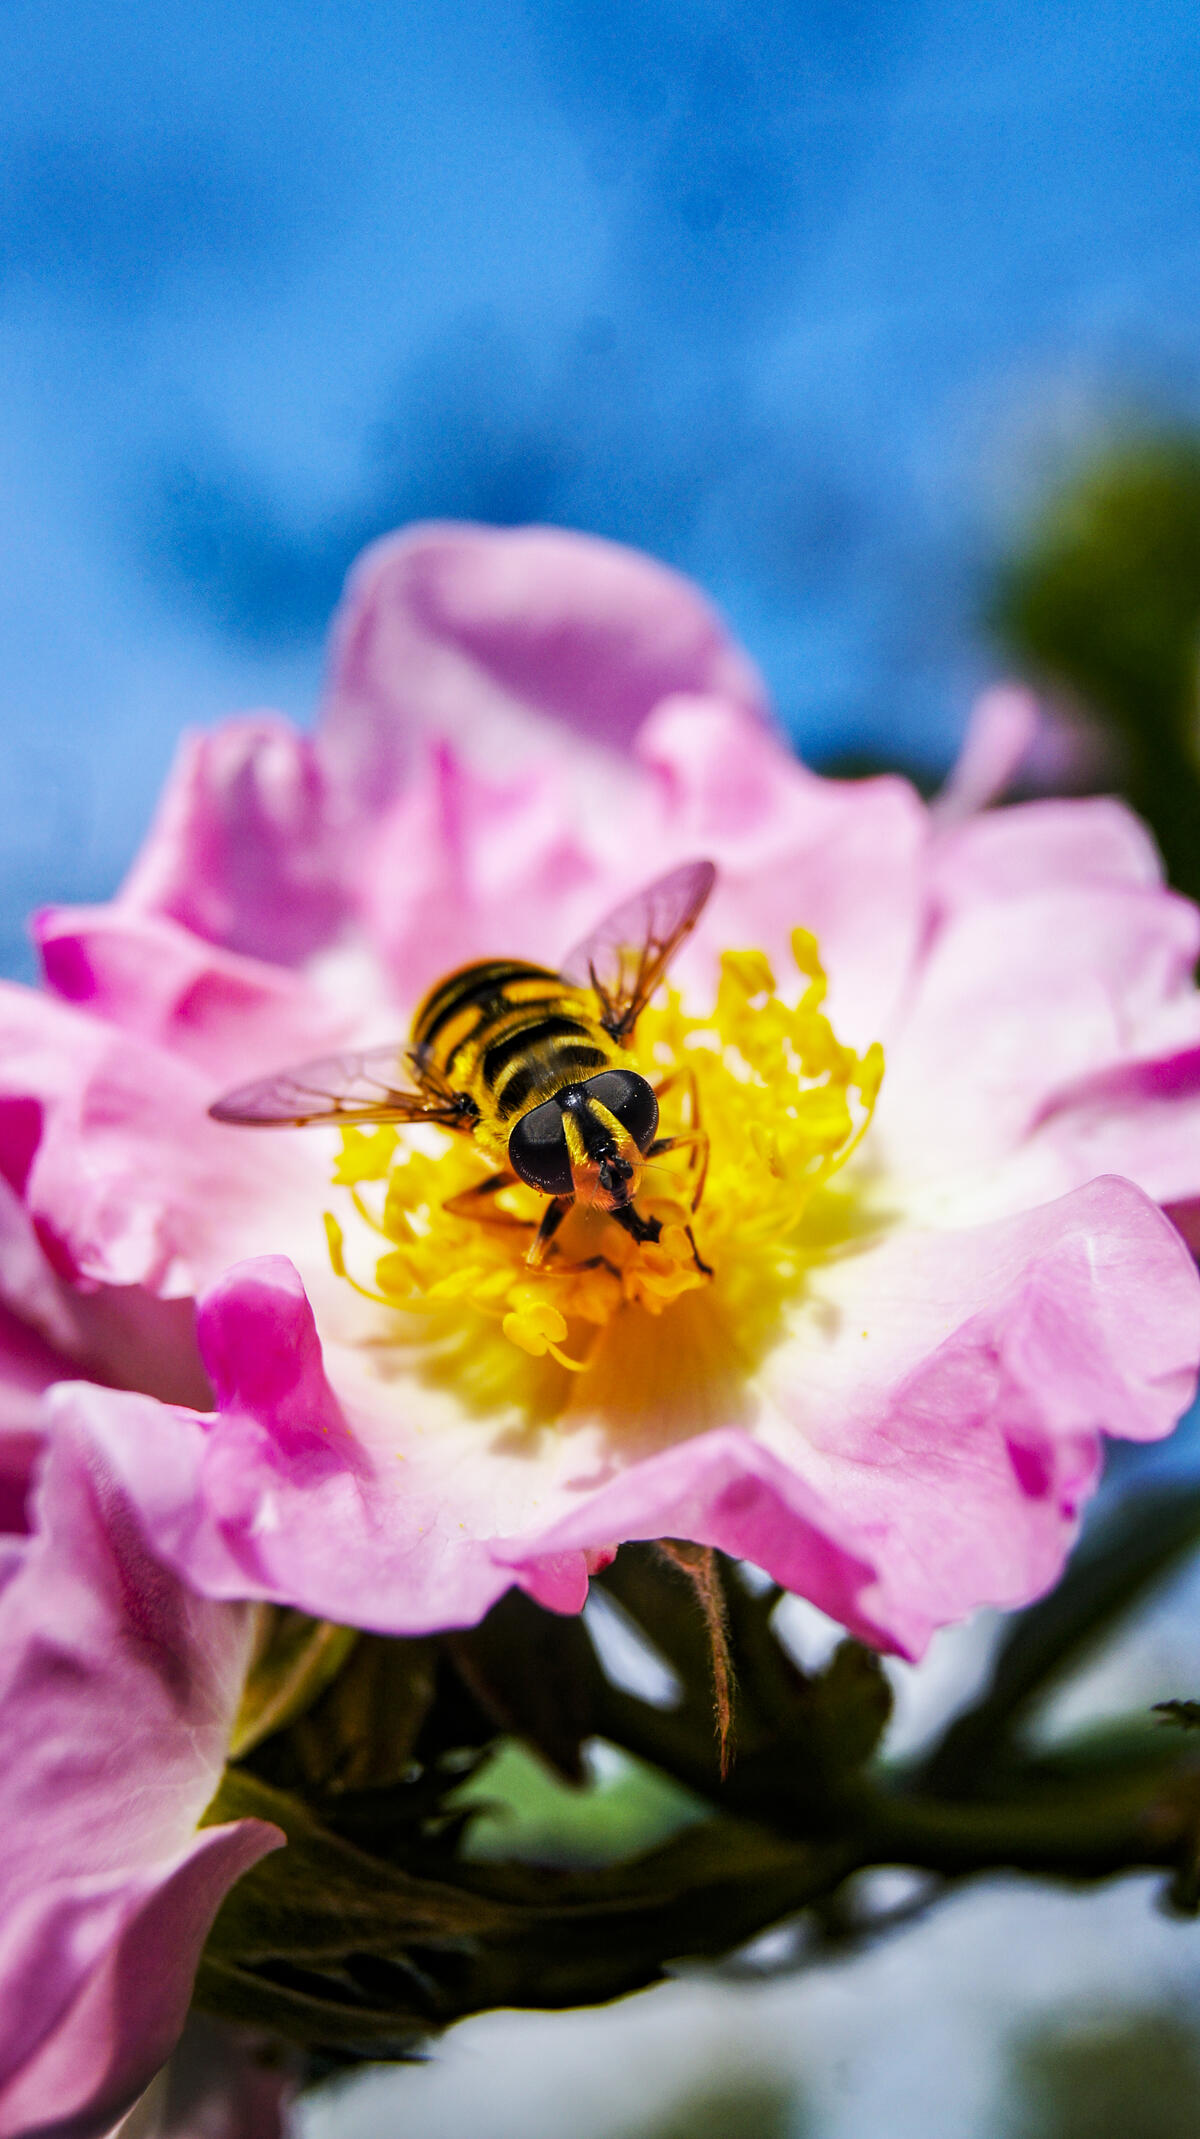 Bee. Flowering rose hips. June in bloom.